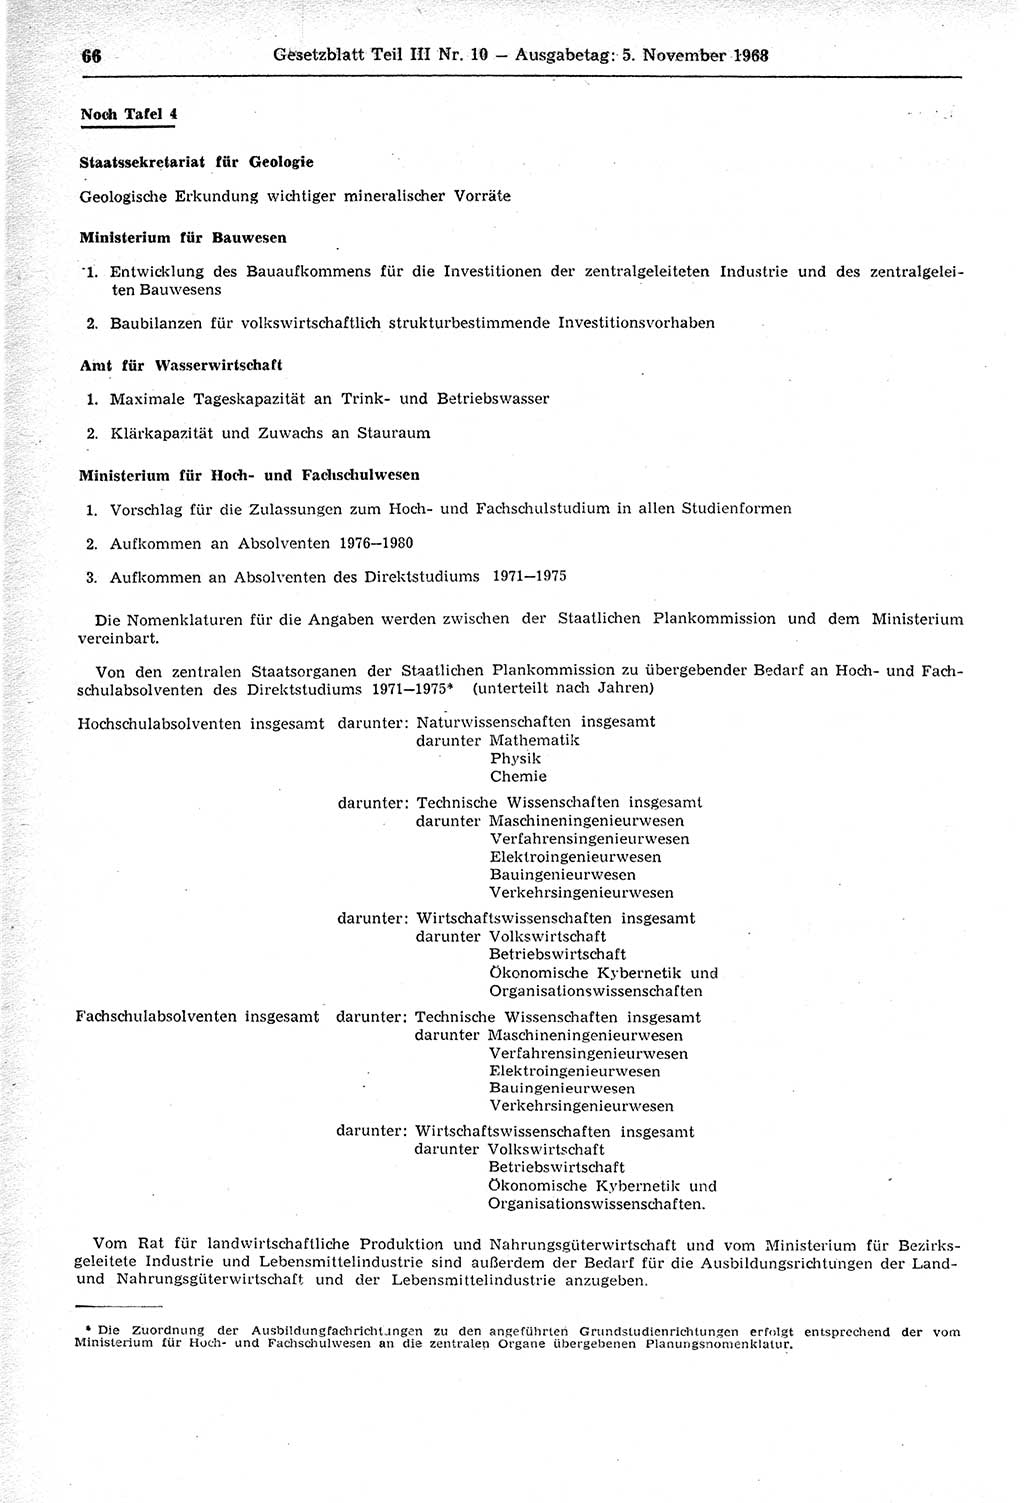 Gesetzblatt (GBl.) der Deutschen Demokratischen Republik (DDR) Teil ⅠⅠⅠ 1968, Seite 66 (GBl. DDR ⅠⅠⅠ 1968, S. 66)